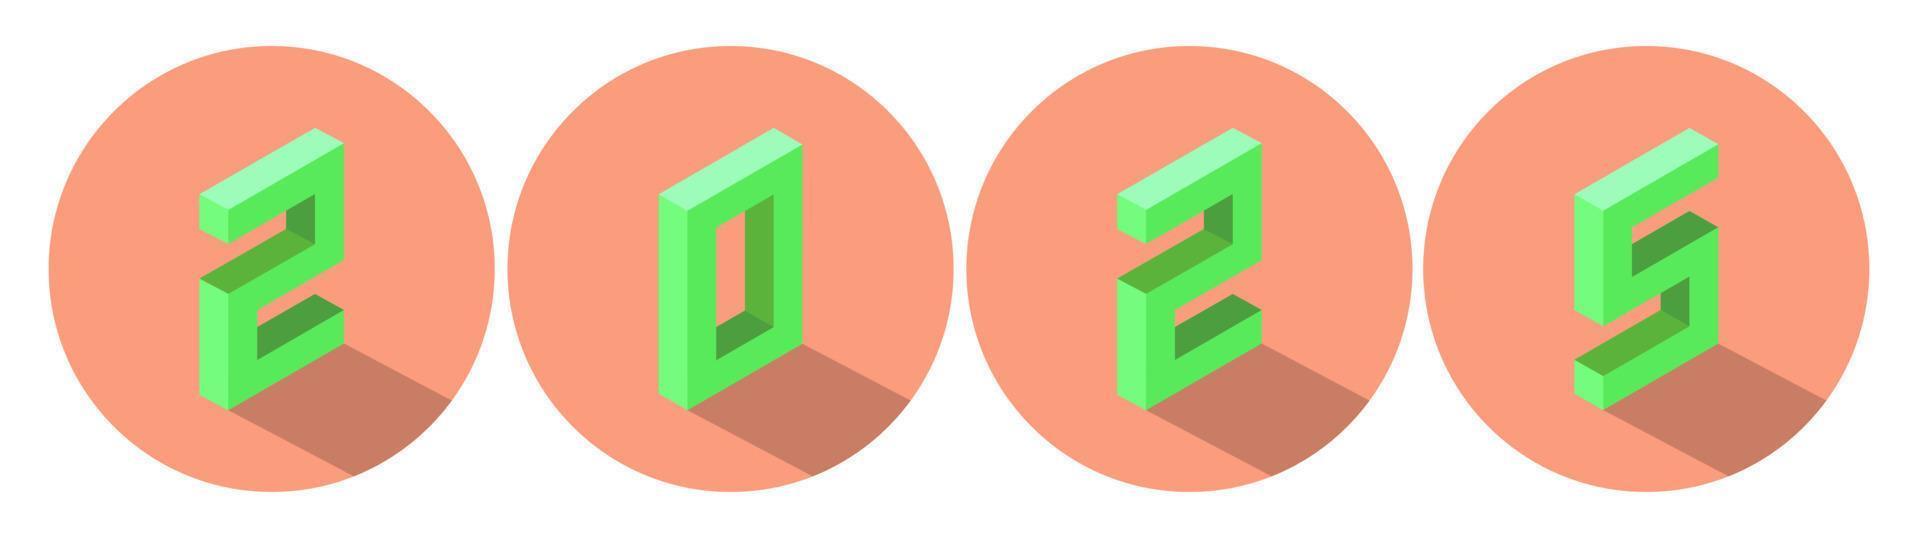 ano novo cor verde 2025 em design de círculo de cores de salmão claro. estilo isométrico. vetor